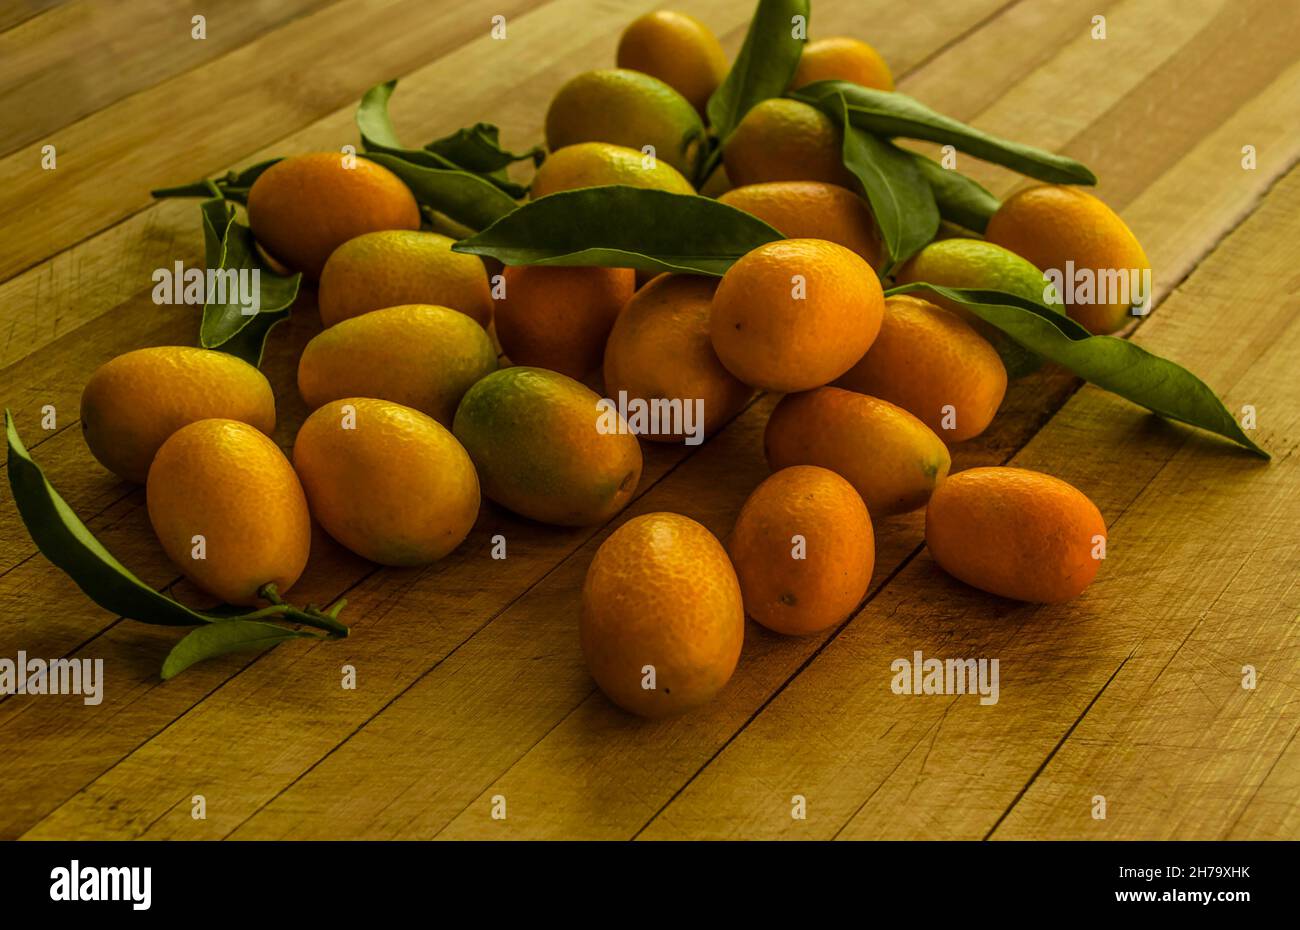 Gruppo di arancio dorato Kumquat - piccoli agrumi tropicali con buccia commestibile, si trovano su un asse di legno Foto Stock